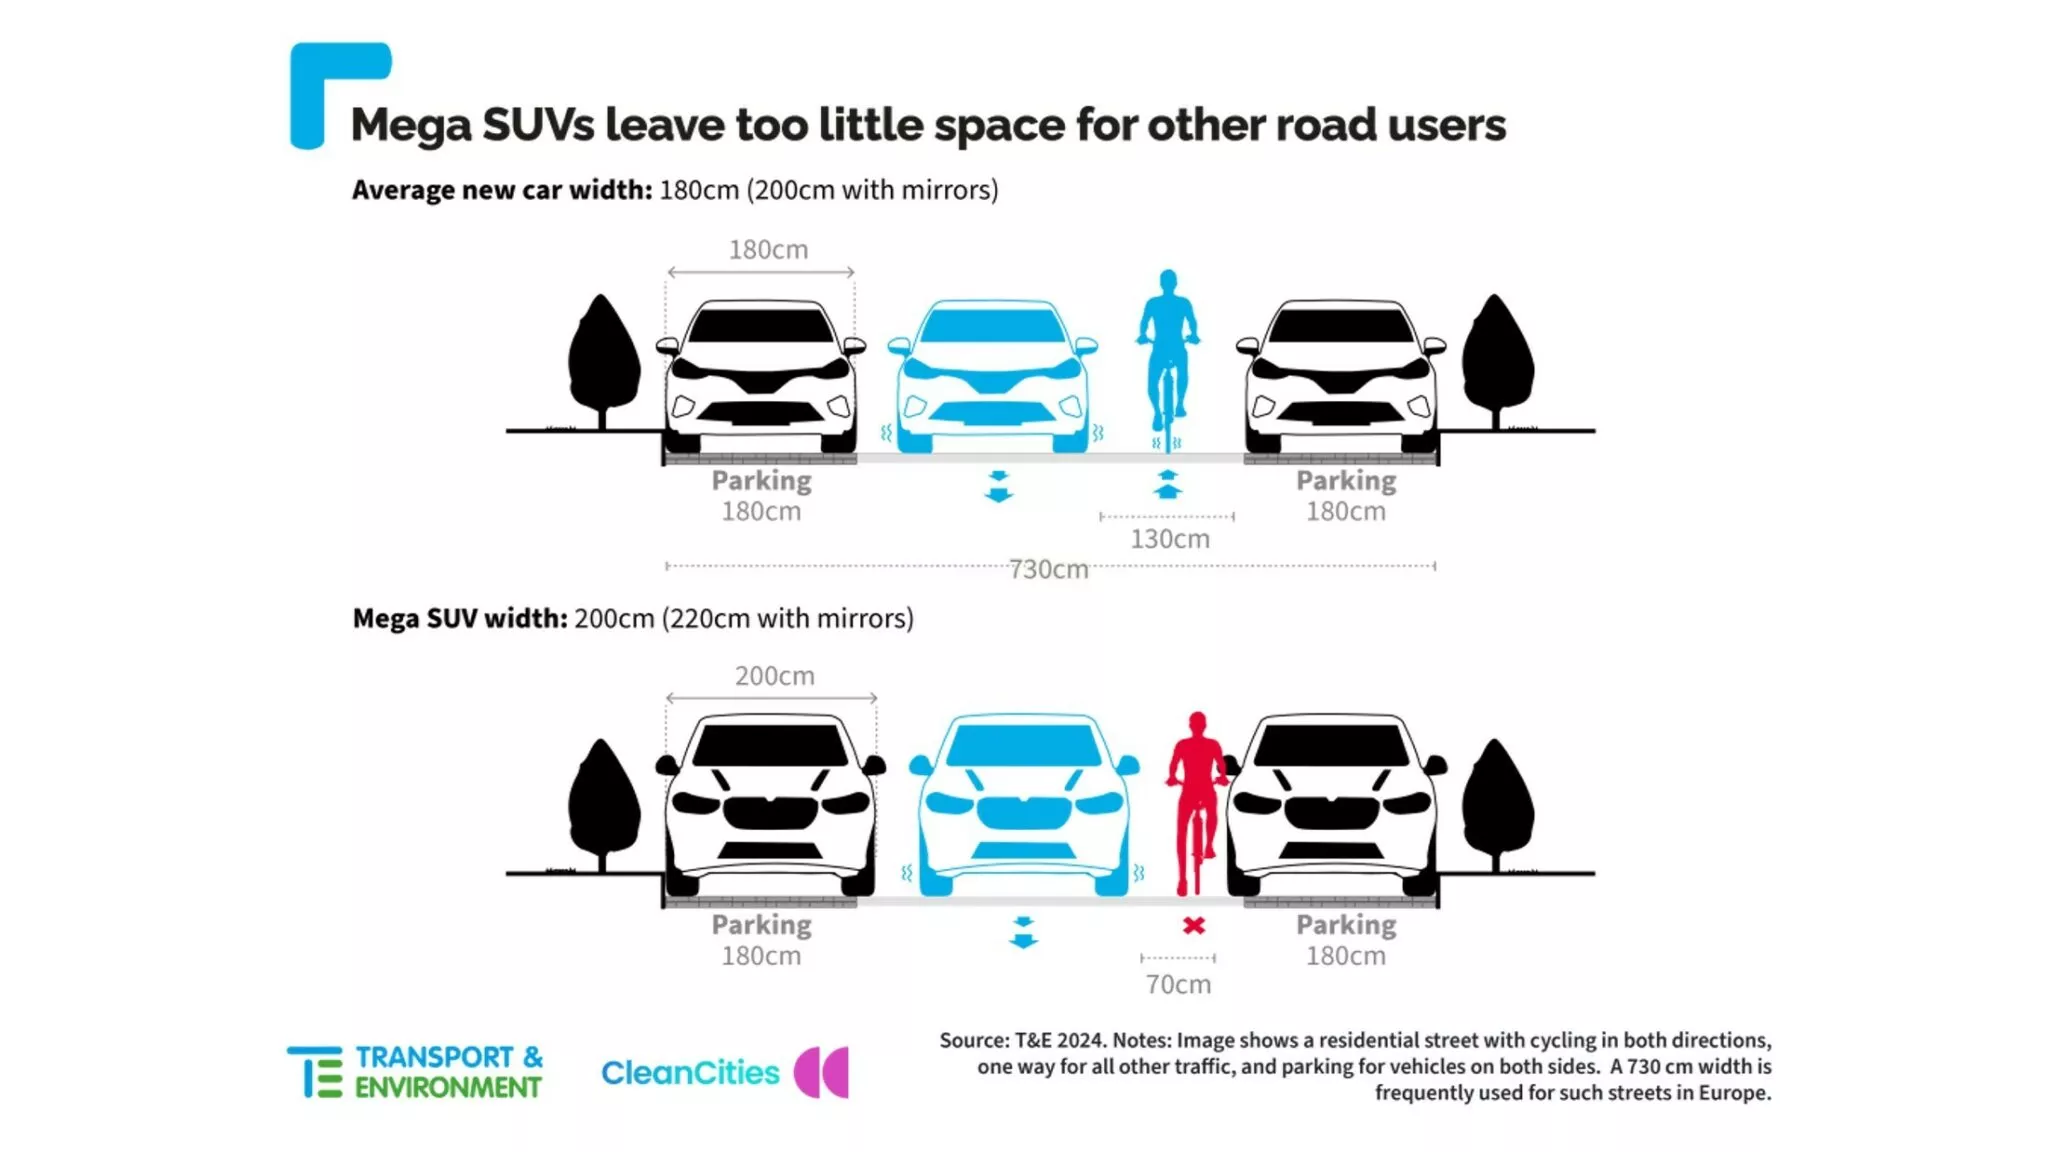 Се поголемите SUV димензии прават проблем во европските градови